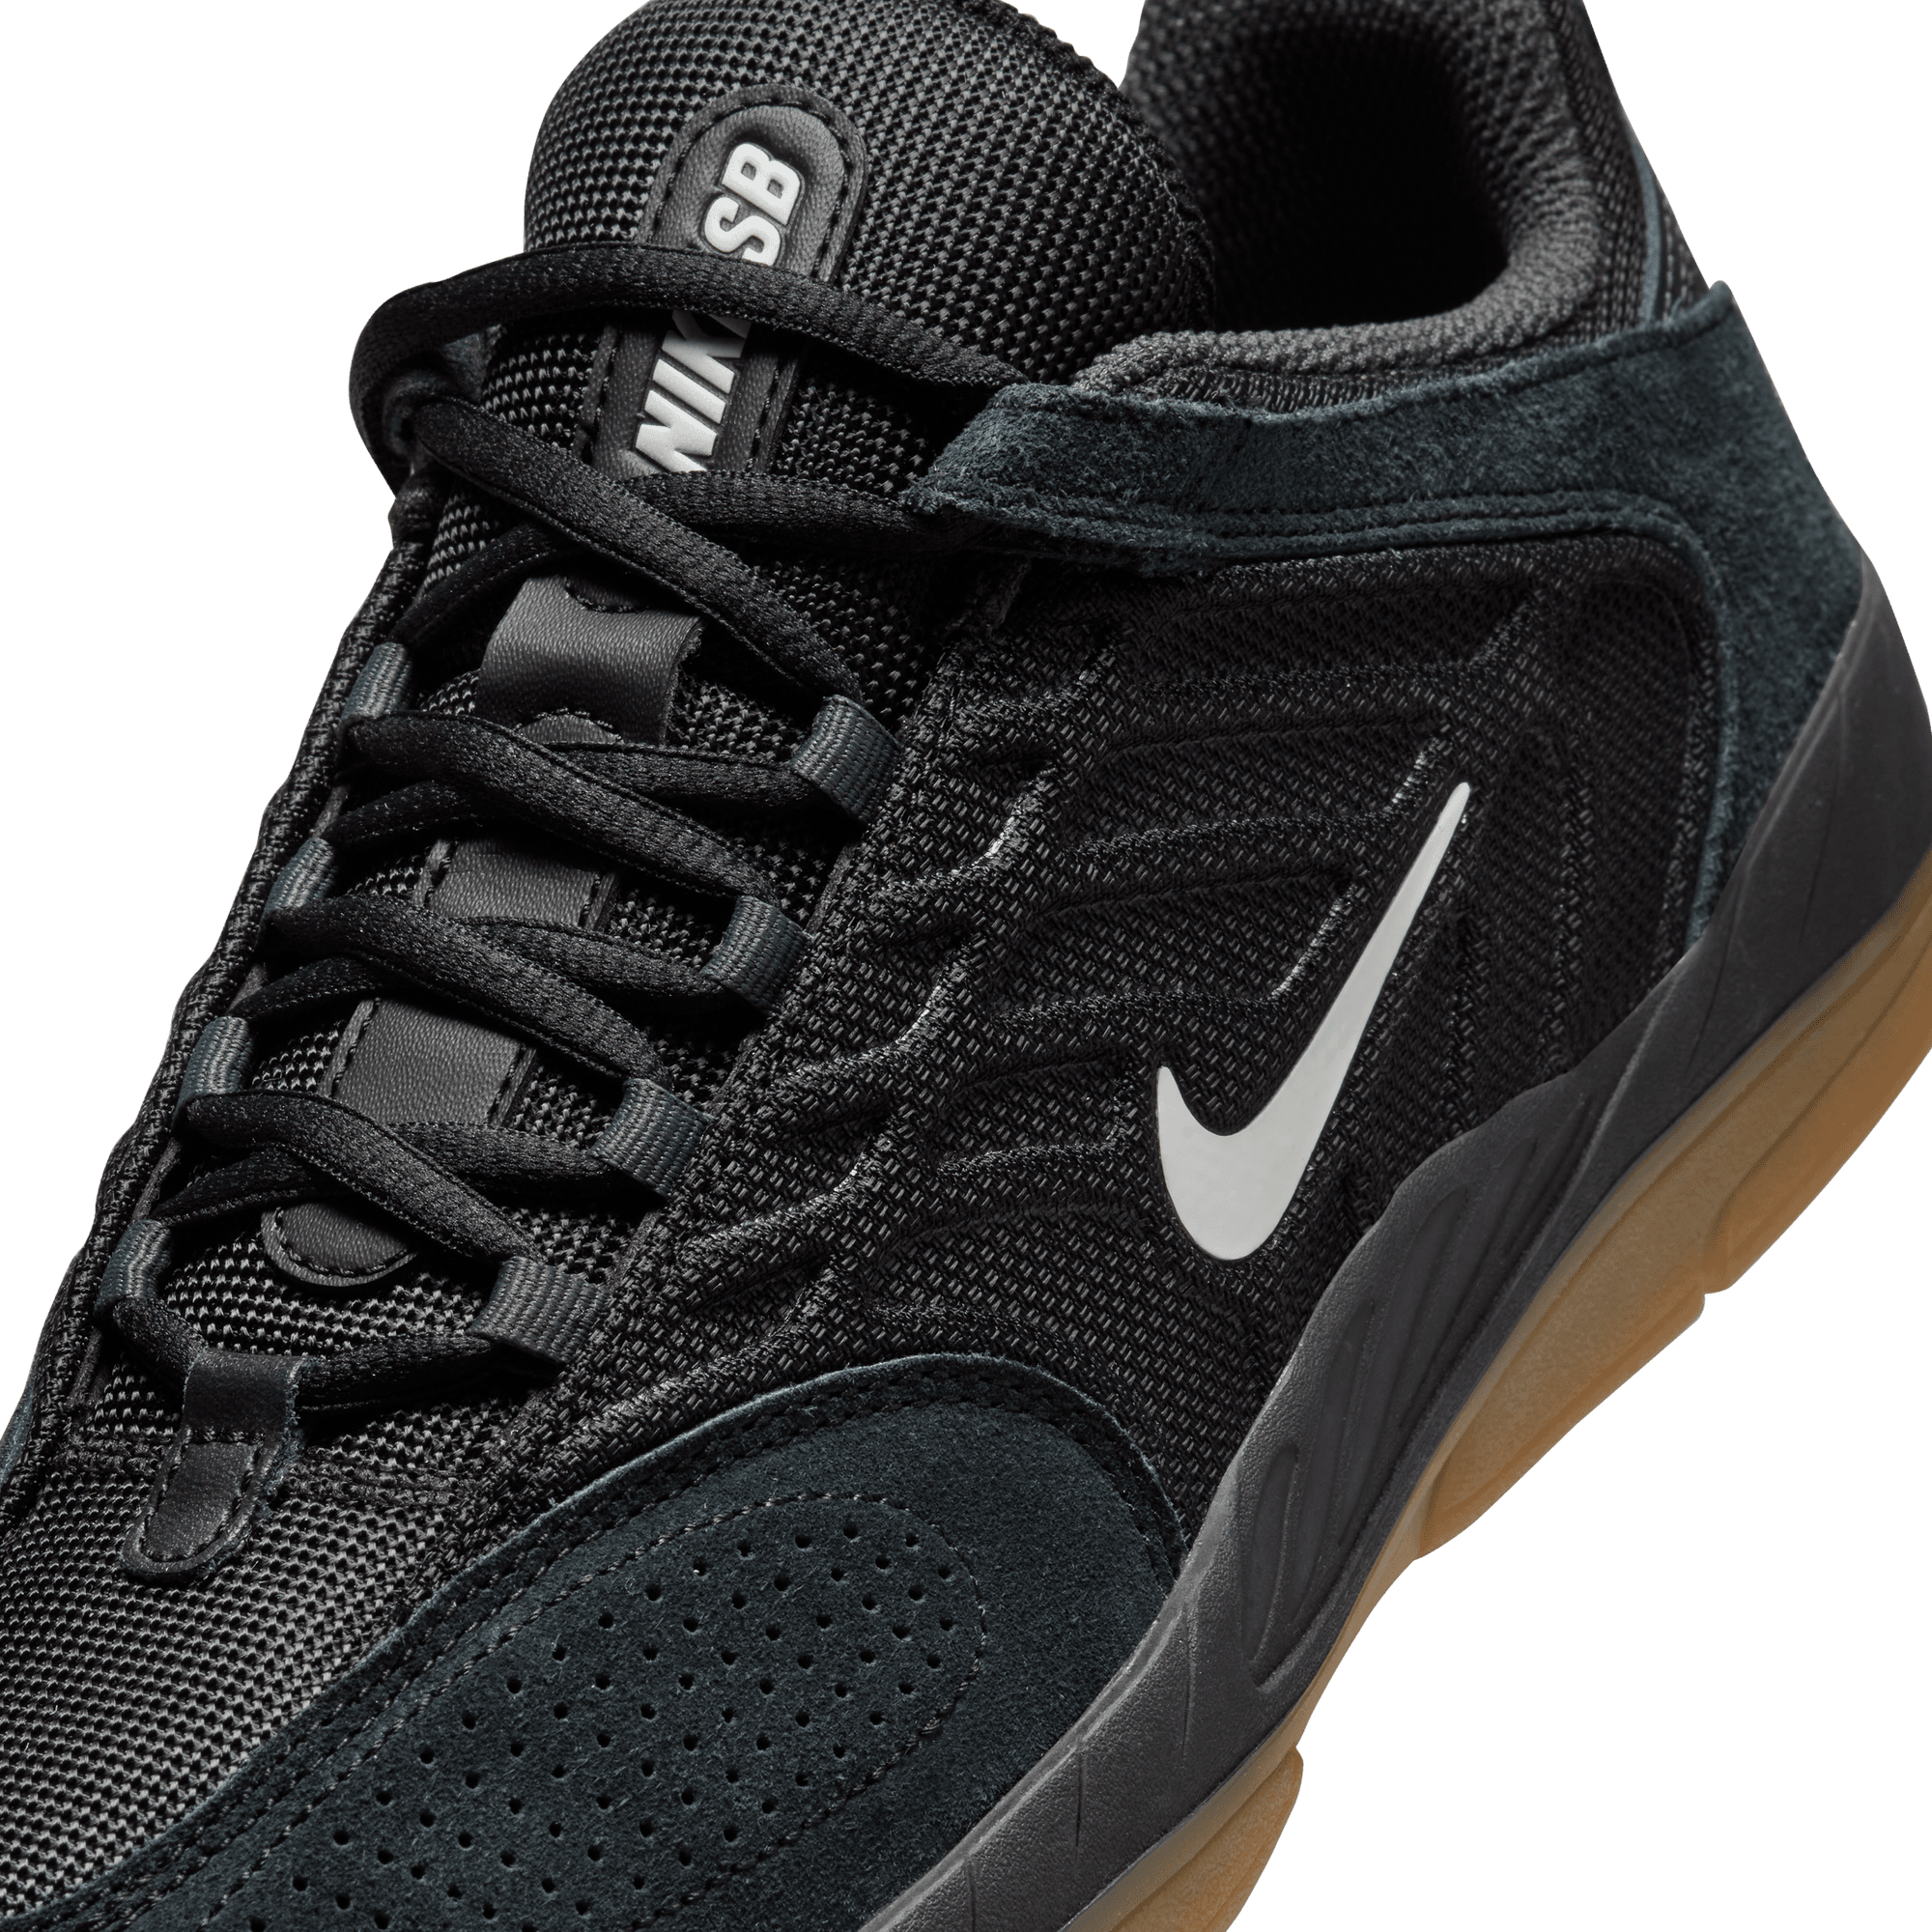 Black/Gum Vertebrae Nike SB Skate Shoe Detail